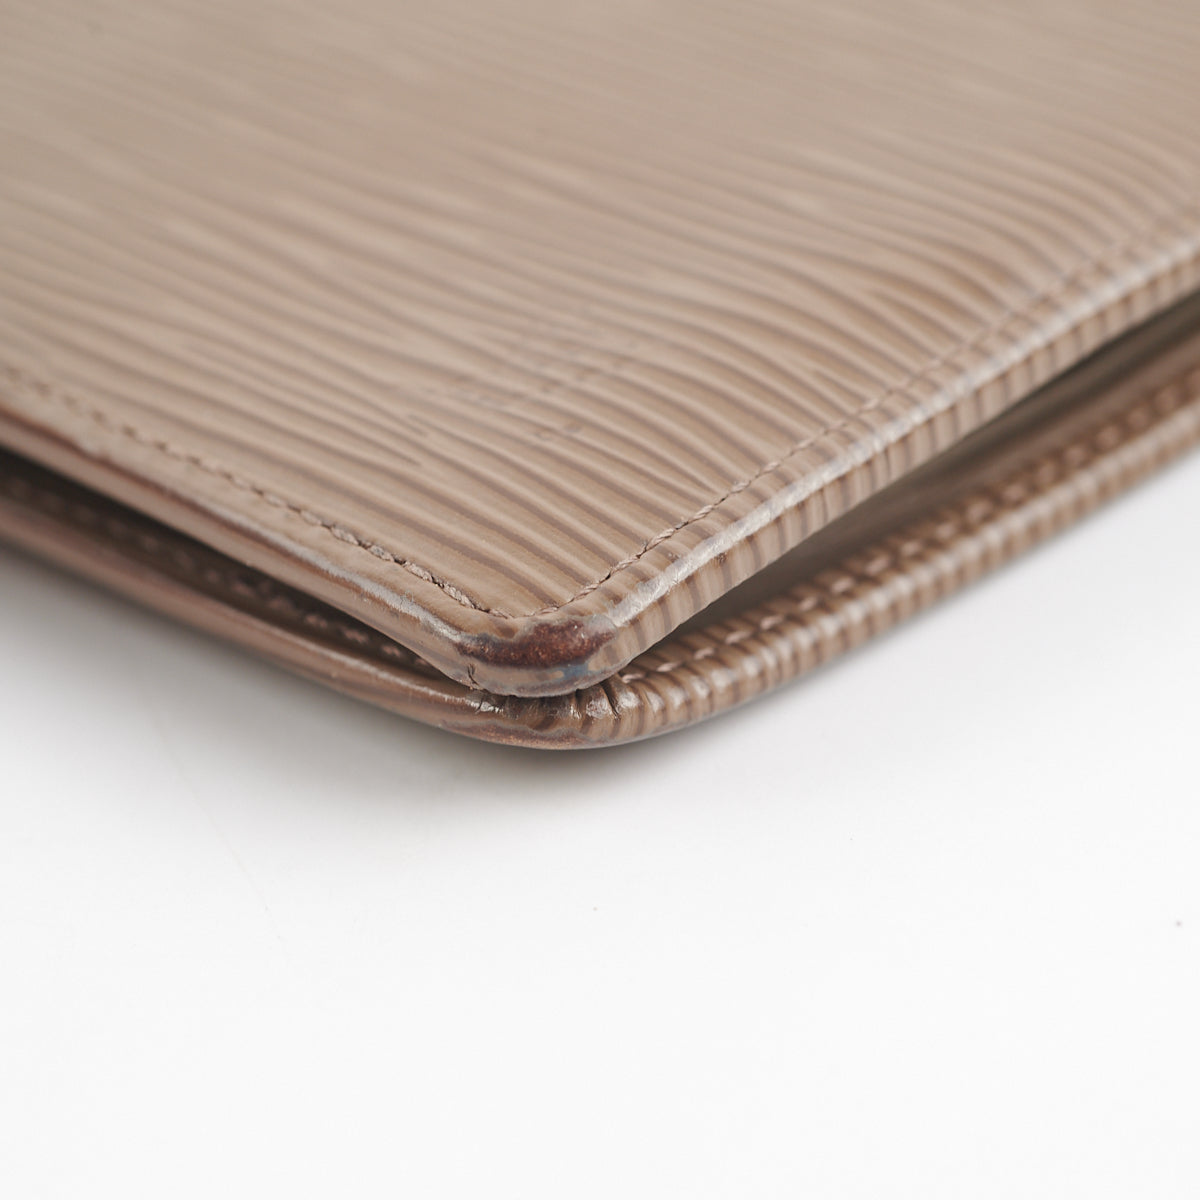 Shop Louis Vuitton EPI Marco wallet (M62289) by Tori☆ad